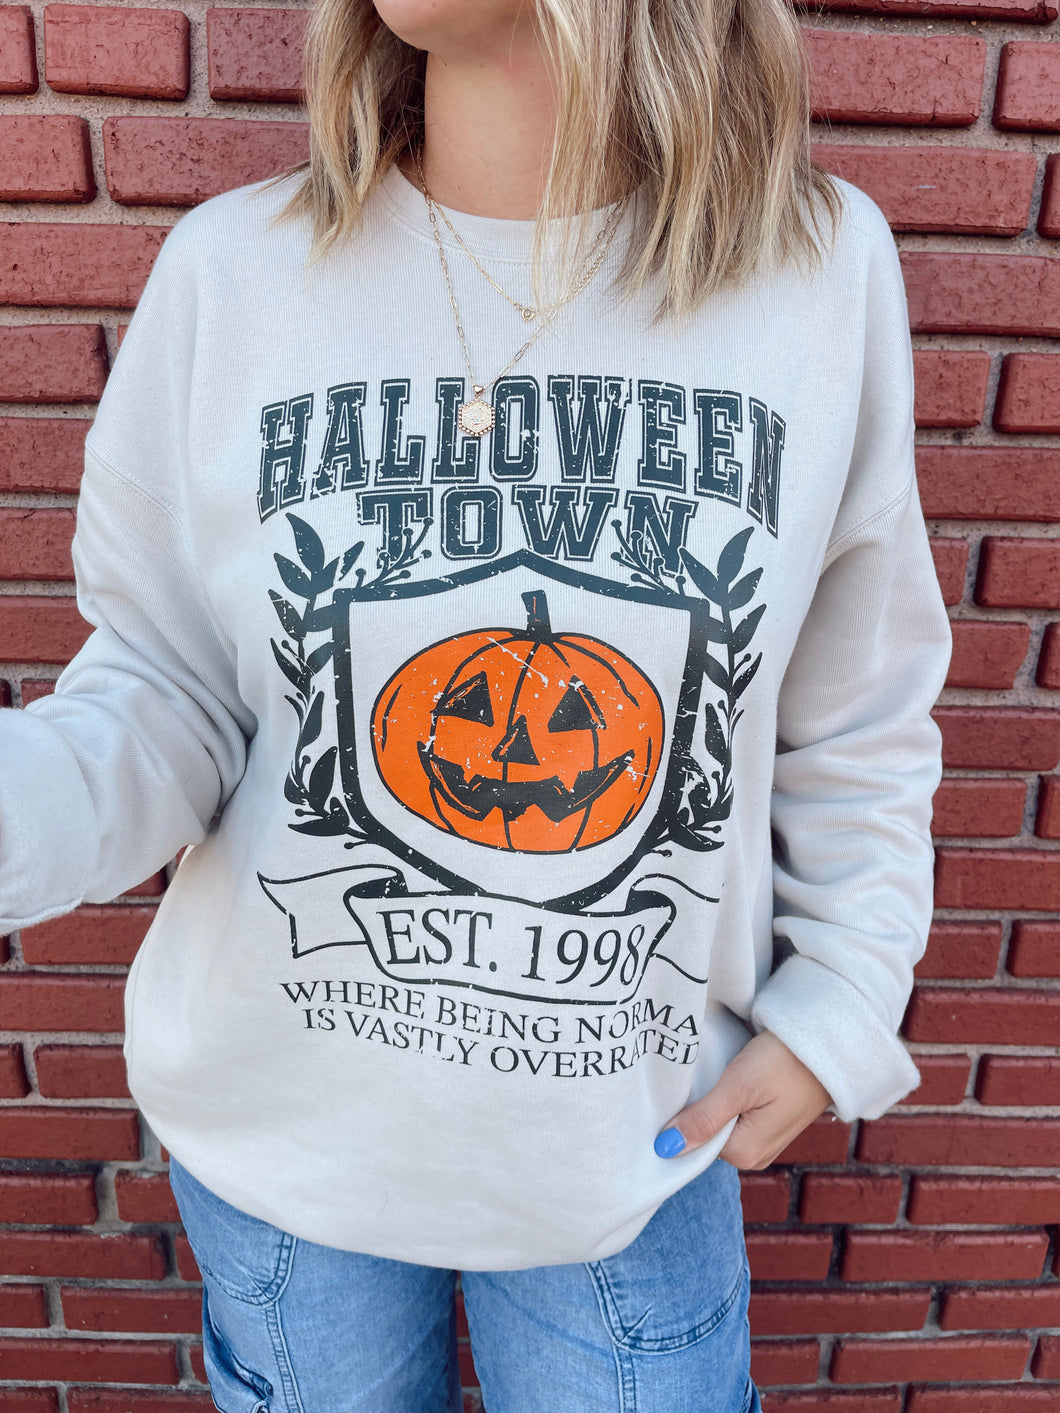 Halloween Town Sweatshirt